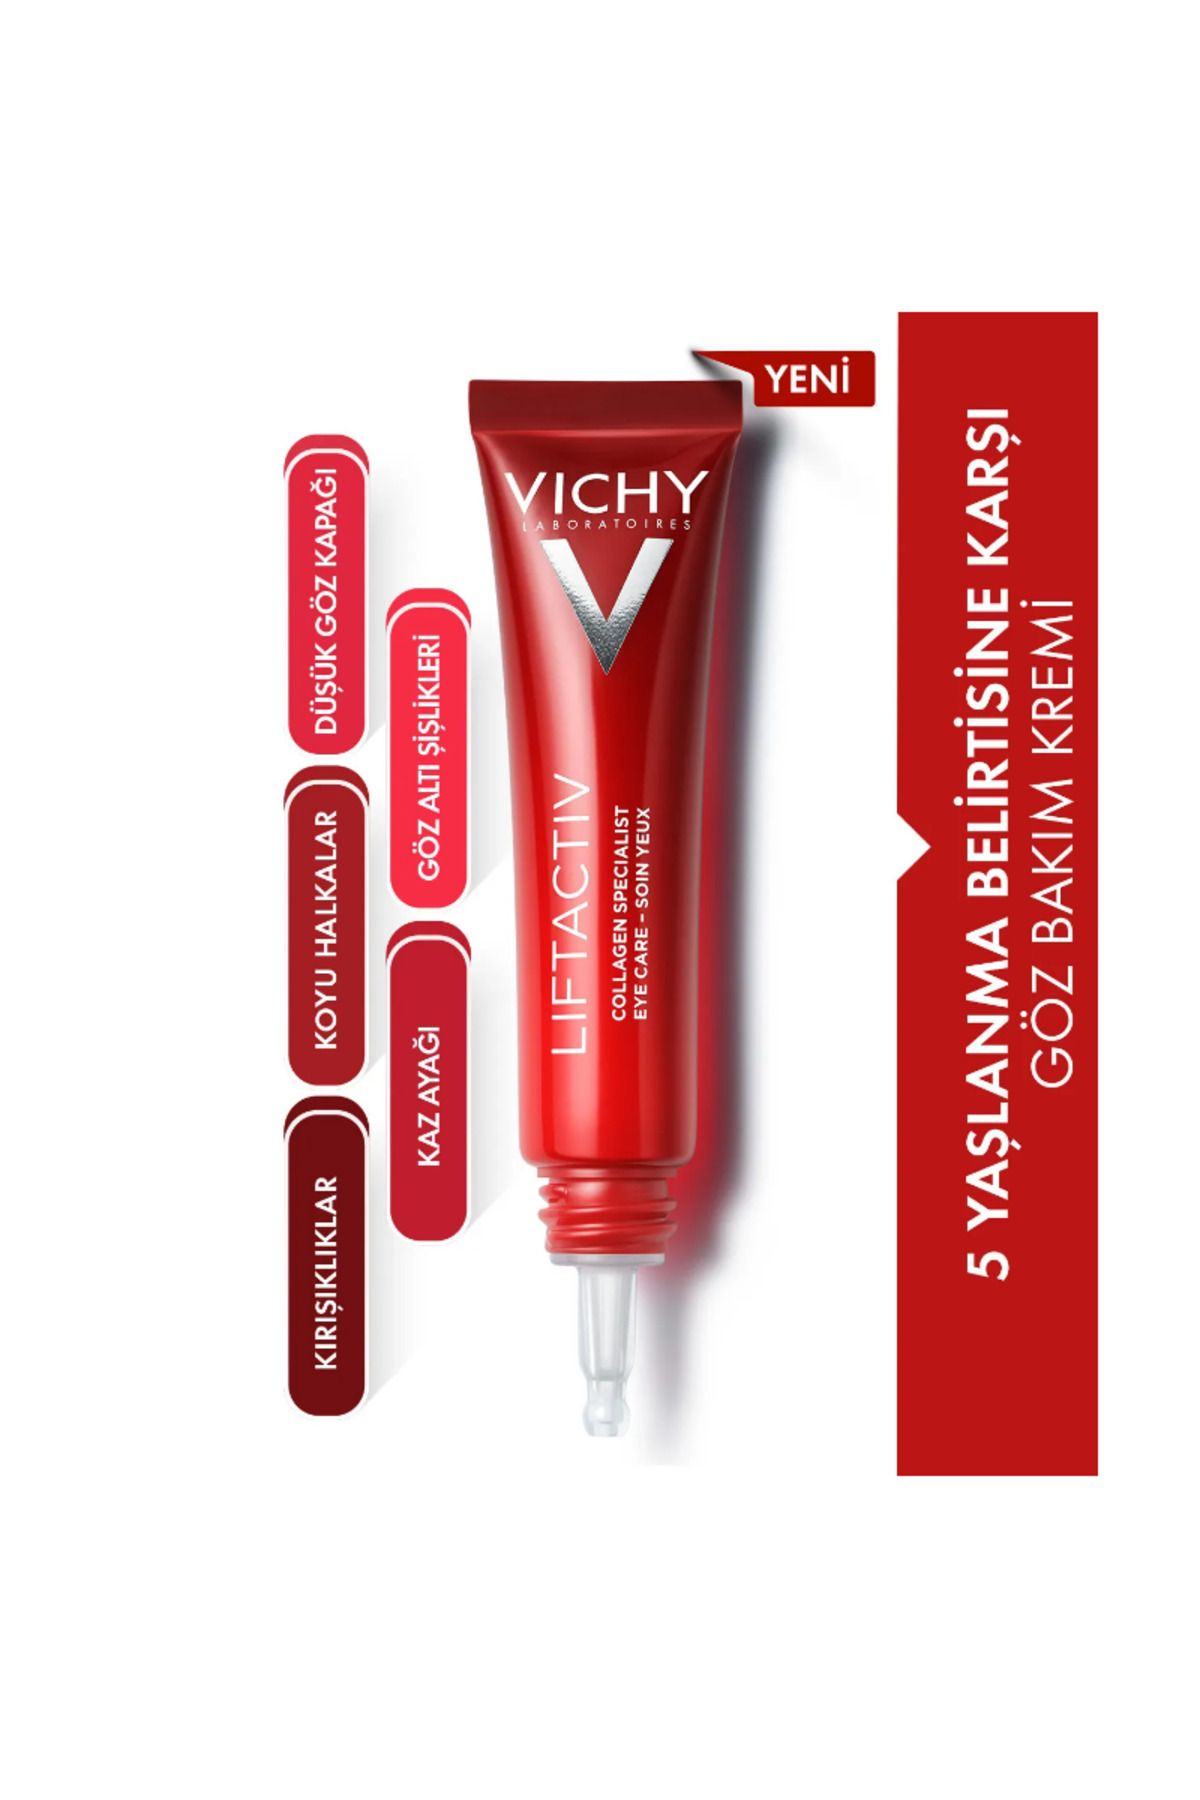 Vichy Liftactiv Collagen Specialist 5 Yaşlanma Belirtilerine Karşı Göz Bakım Kremi 15ml